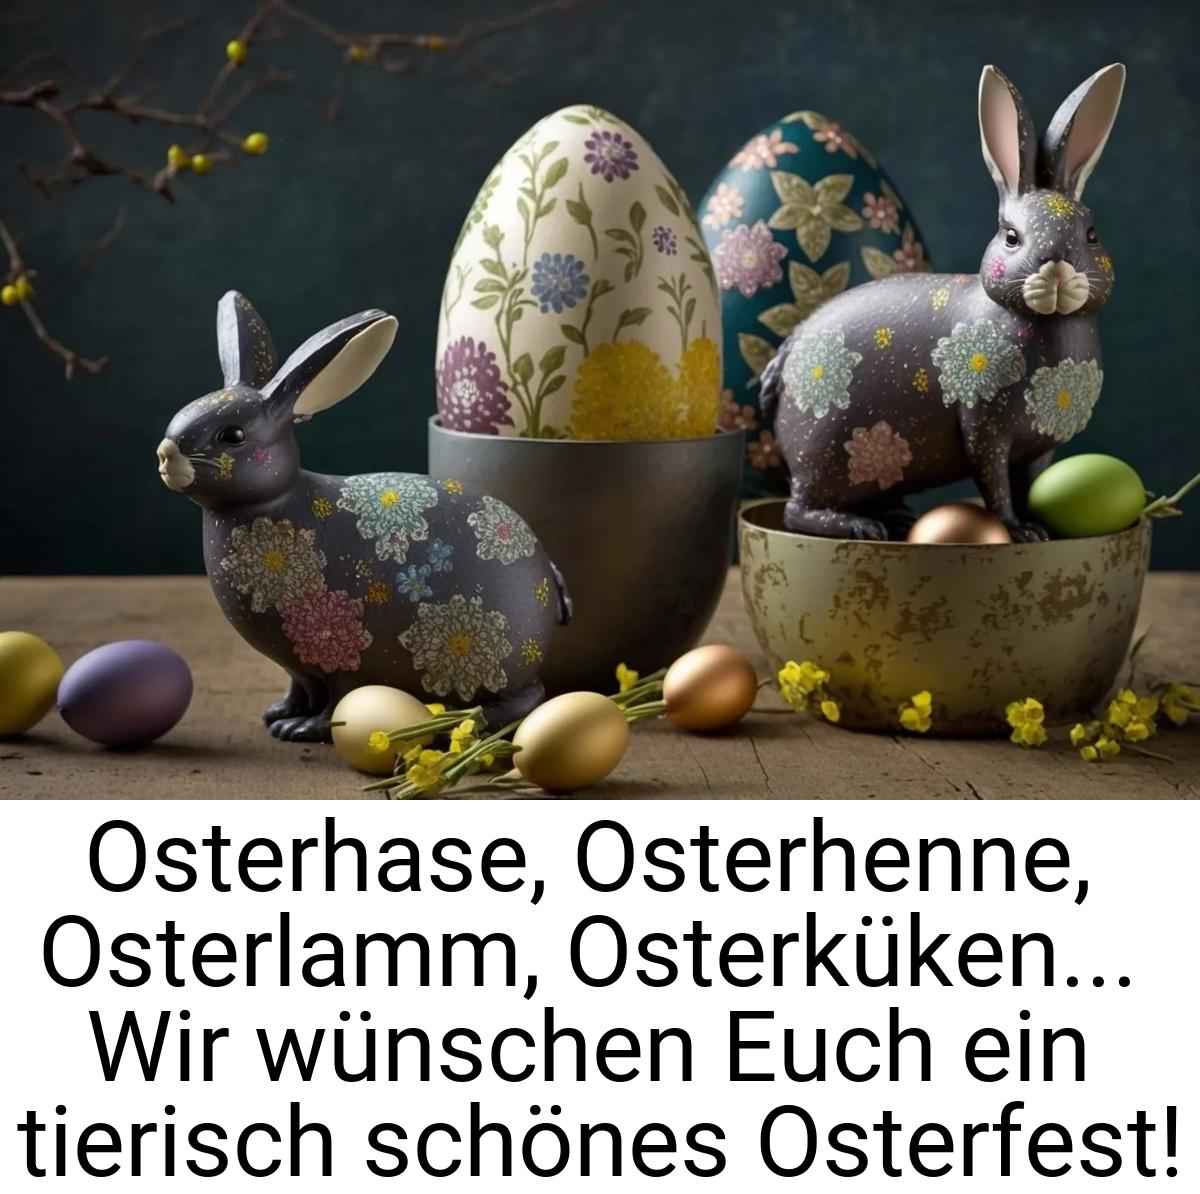 Osterhase, Osterhenne, Osterlamm, Osterküken... Wir